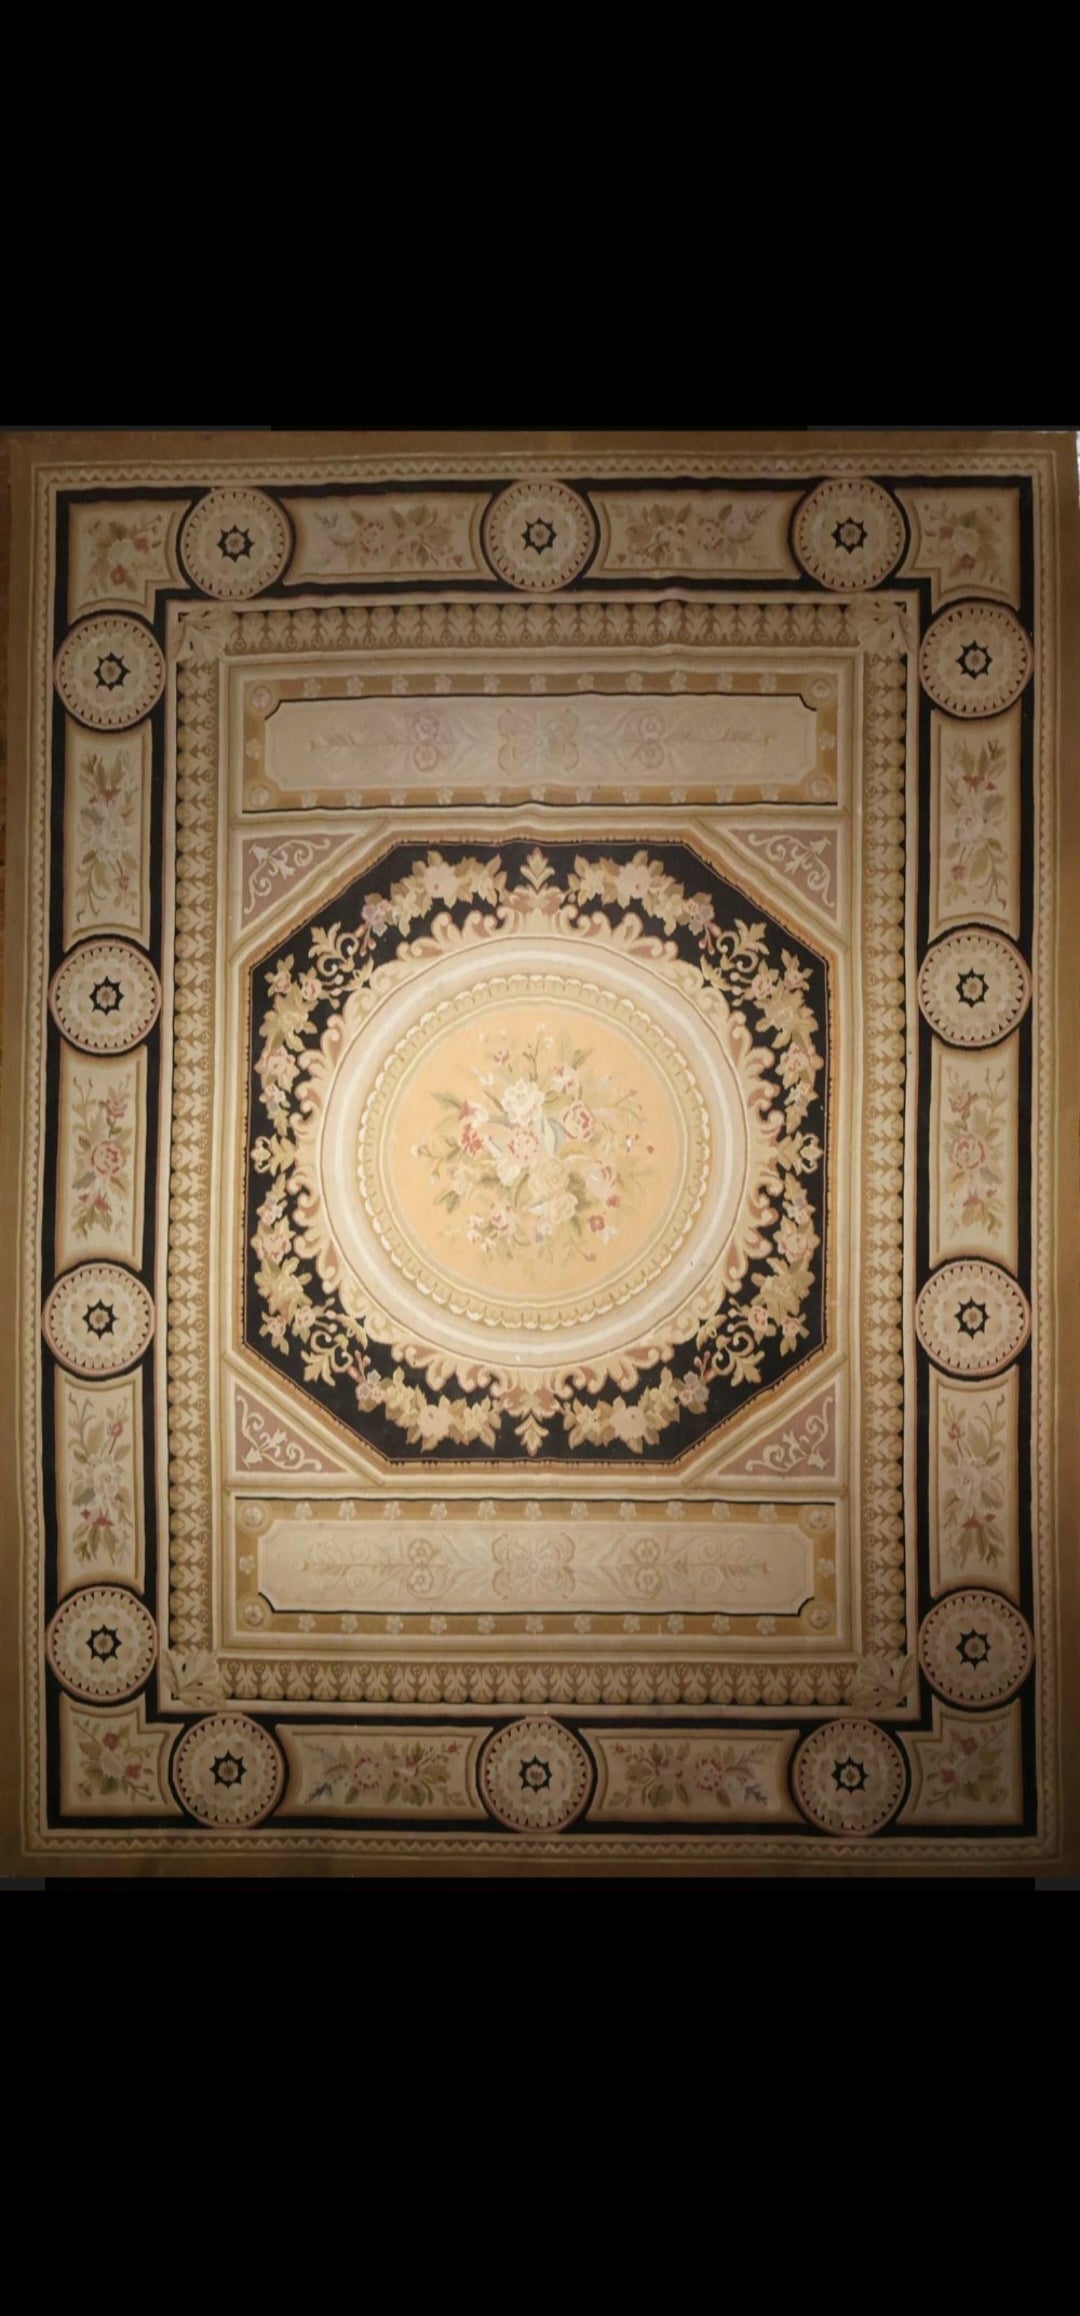 Ein großer und hübscher Teppich im neoklassischen Stil. Handmaid im gleichen Stil wie die Aubusson-Teppiche des achtzehnten Jahrhunderts hergestellt wurden. Durch seine neutrale Farbgebung passt er perfekt zu vielen Innenräumen.
Kann sogar eine sehr